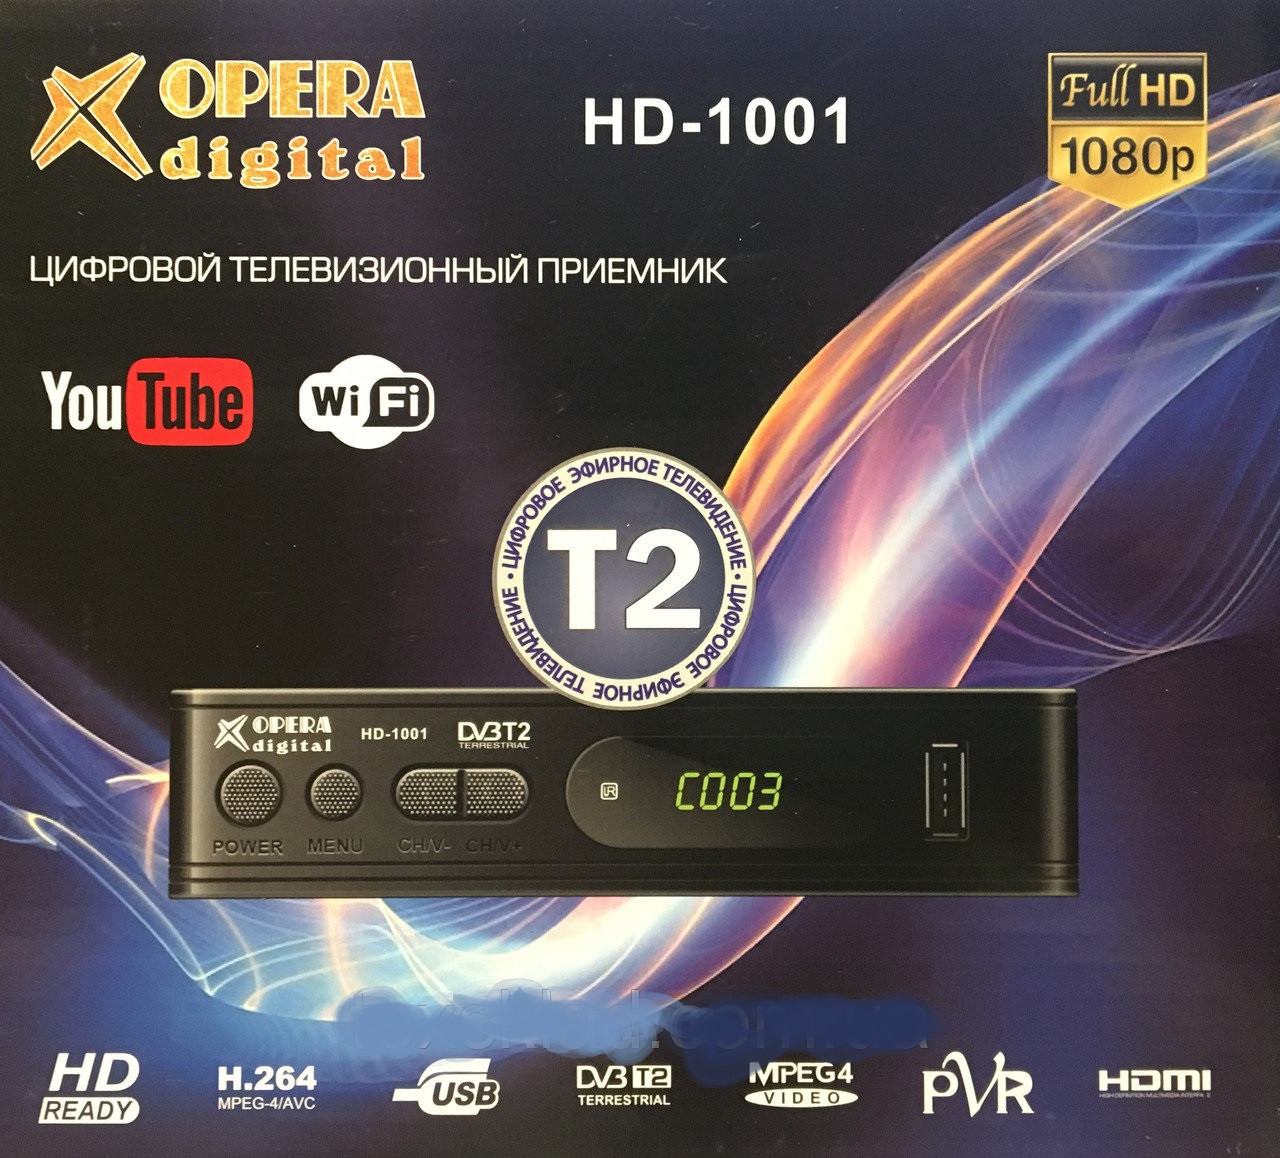 Тюнер Т2 OPERA DIGITAL HD-1001 DVB-T2, ТВ тюнер, Телеприймач, цифрове телебачення! Мега ціна